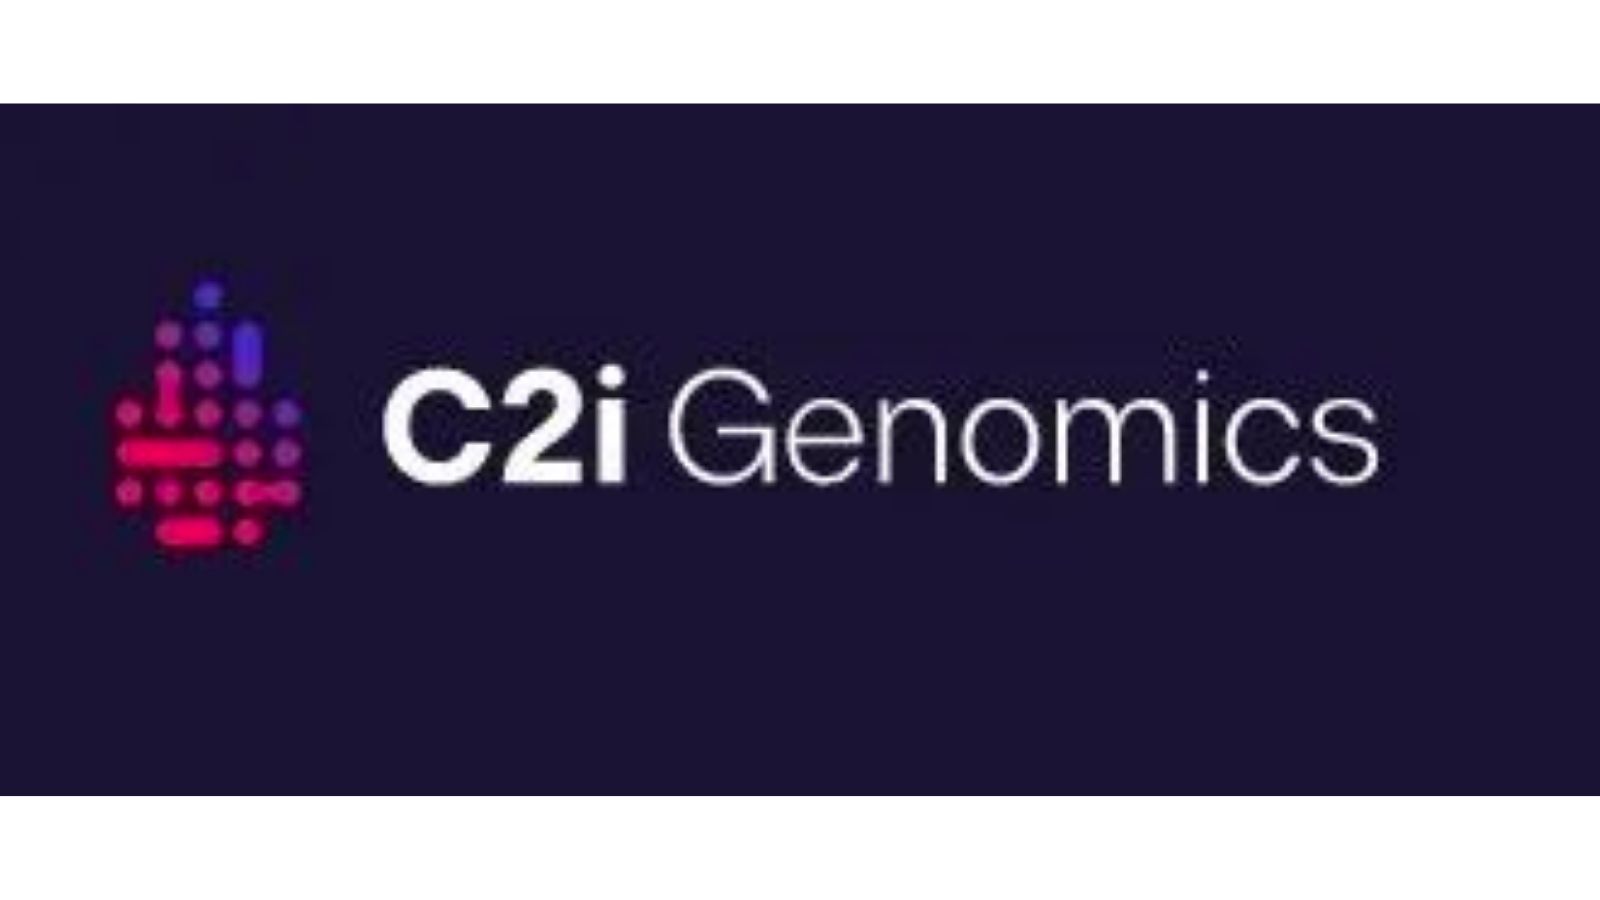 C2i Genomics 通过分析肿瘤 DNA 模式的细微变化，提供对癌症复发和进展的术后监测